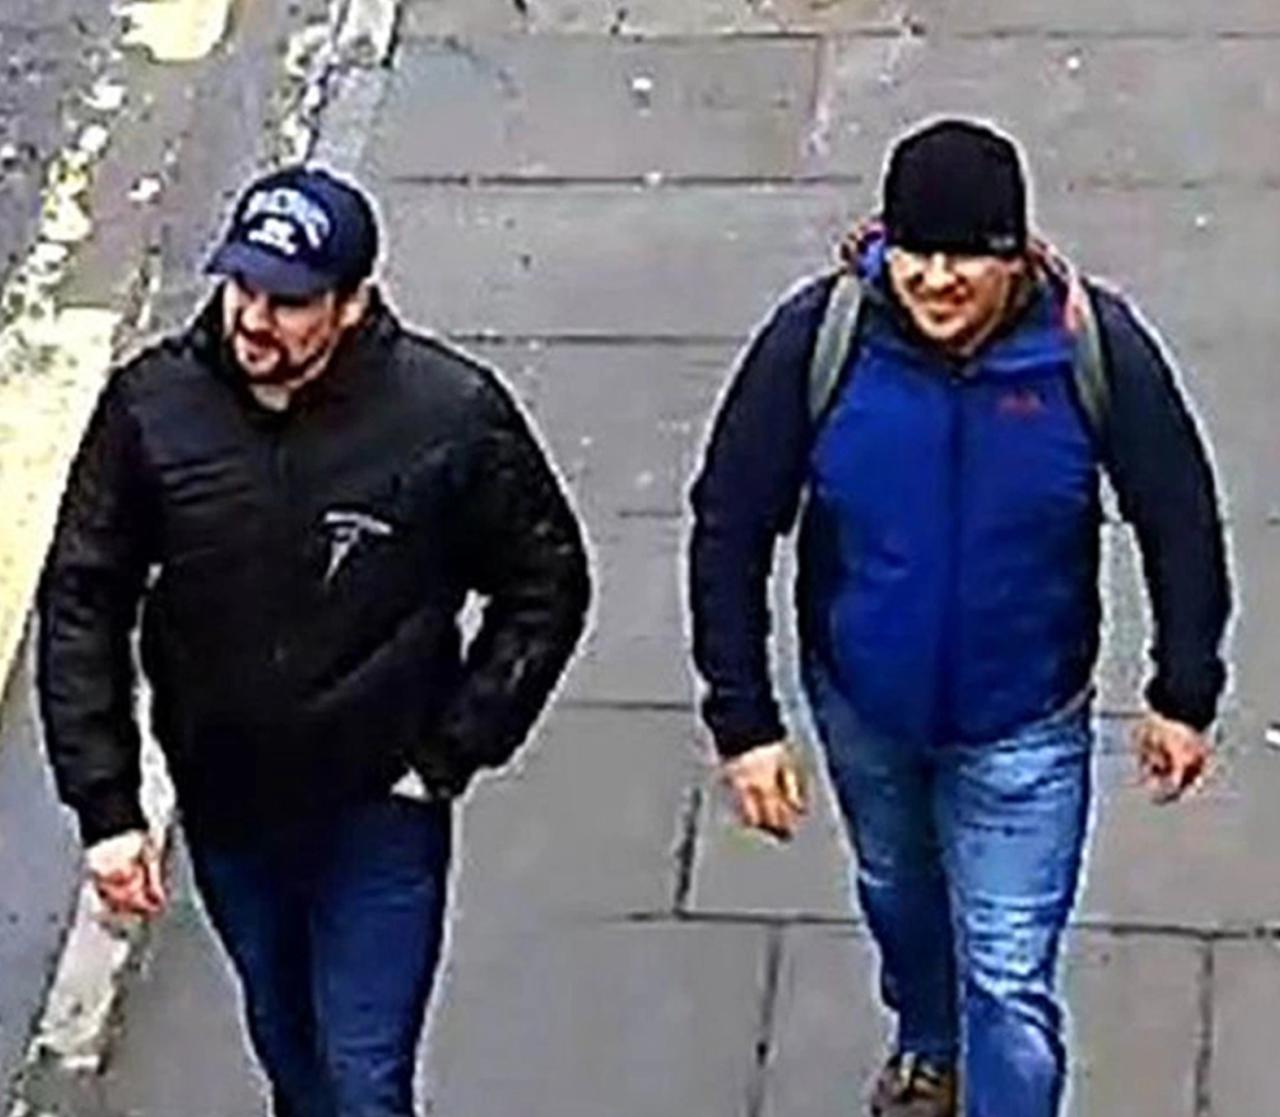 Los espías rusos Ruslan Boszyrov y Alexander Petrov llegaron a Salisbury para envenenar a Sergei y Julia Skripal